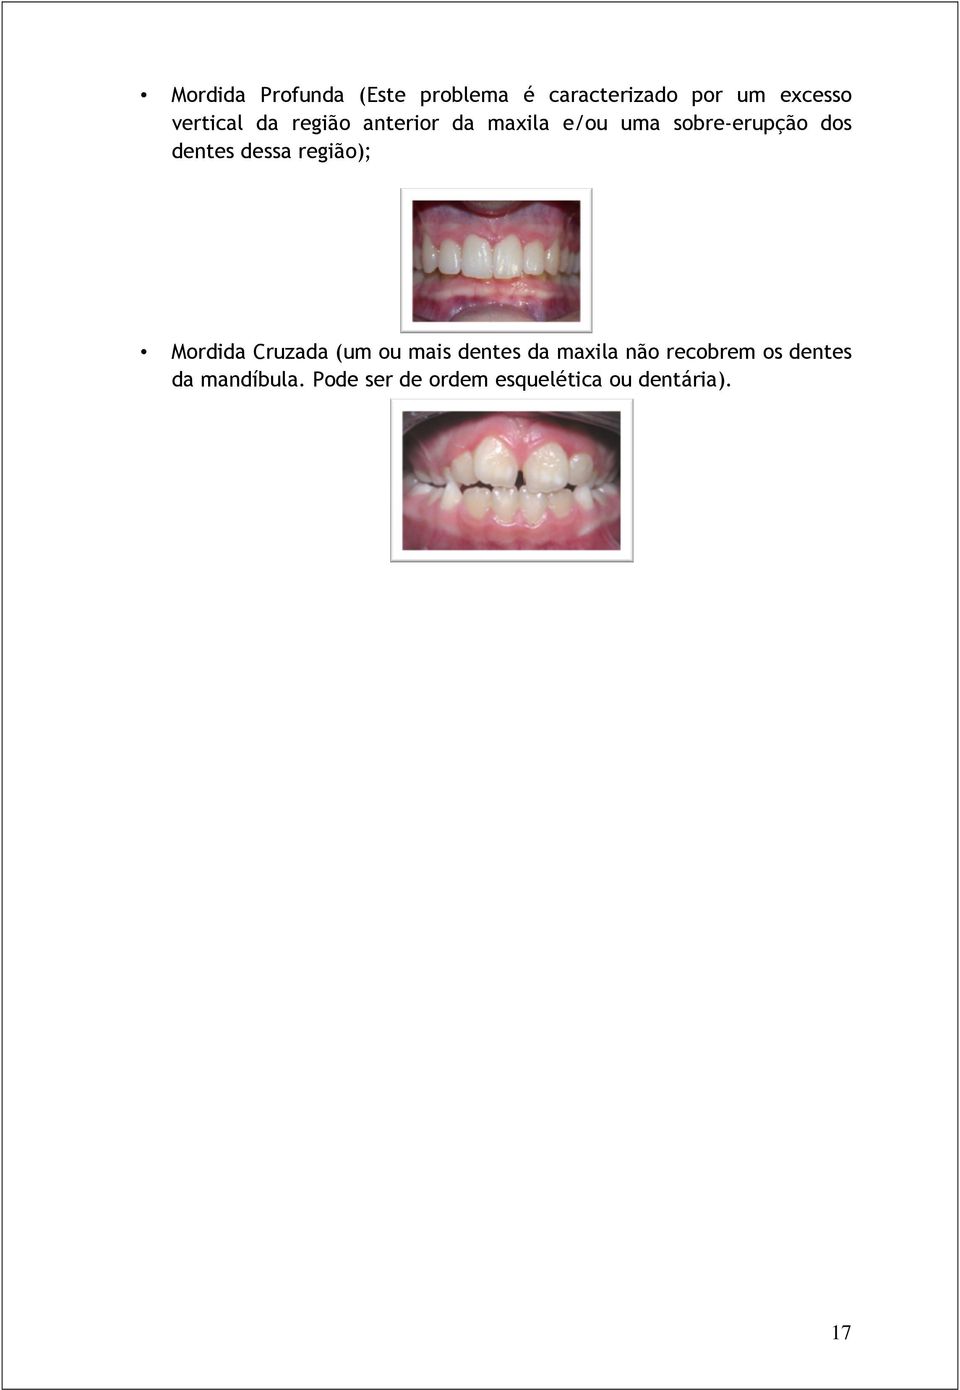 dentes dessa região); Mordida Cruzada (um ou mais dentes da maxila